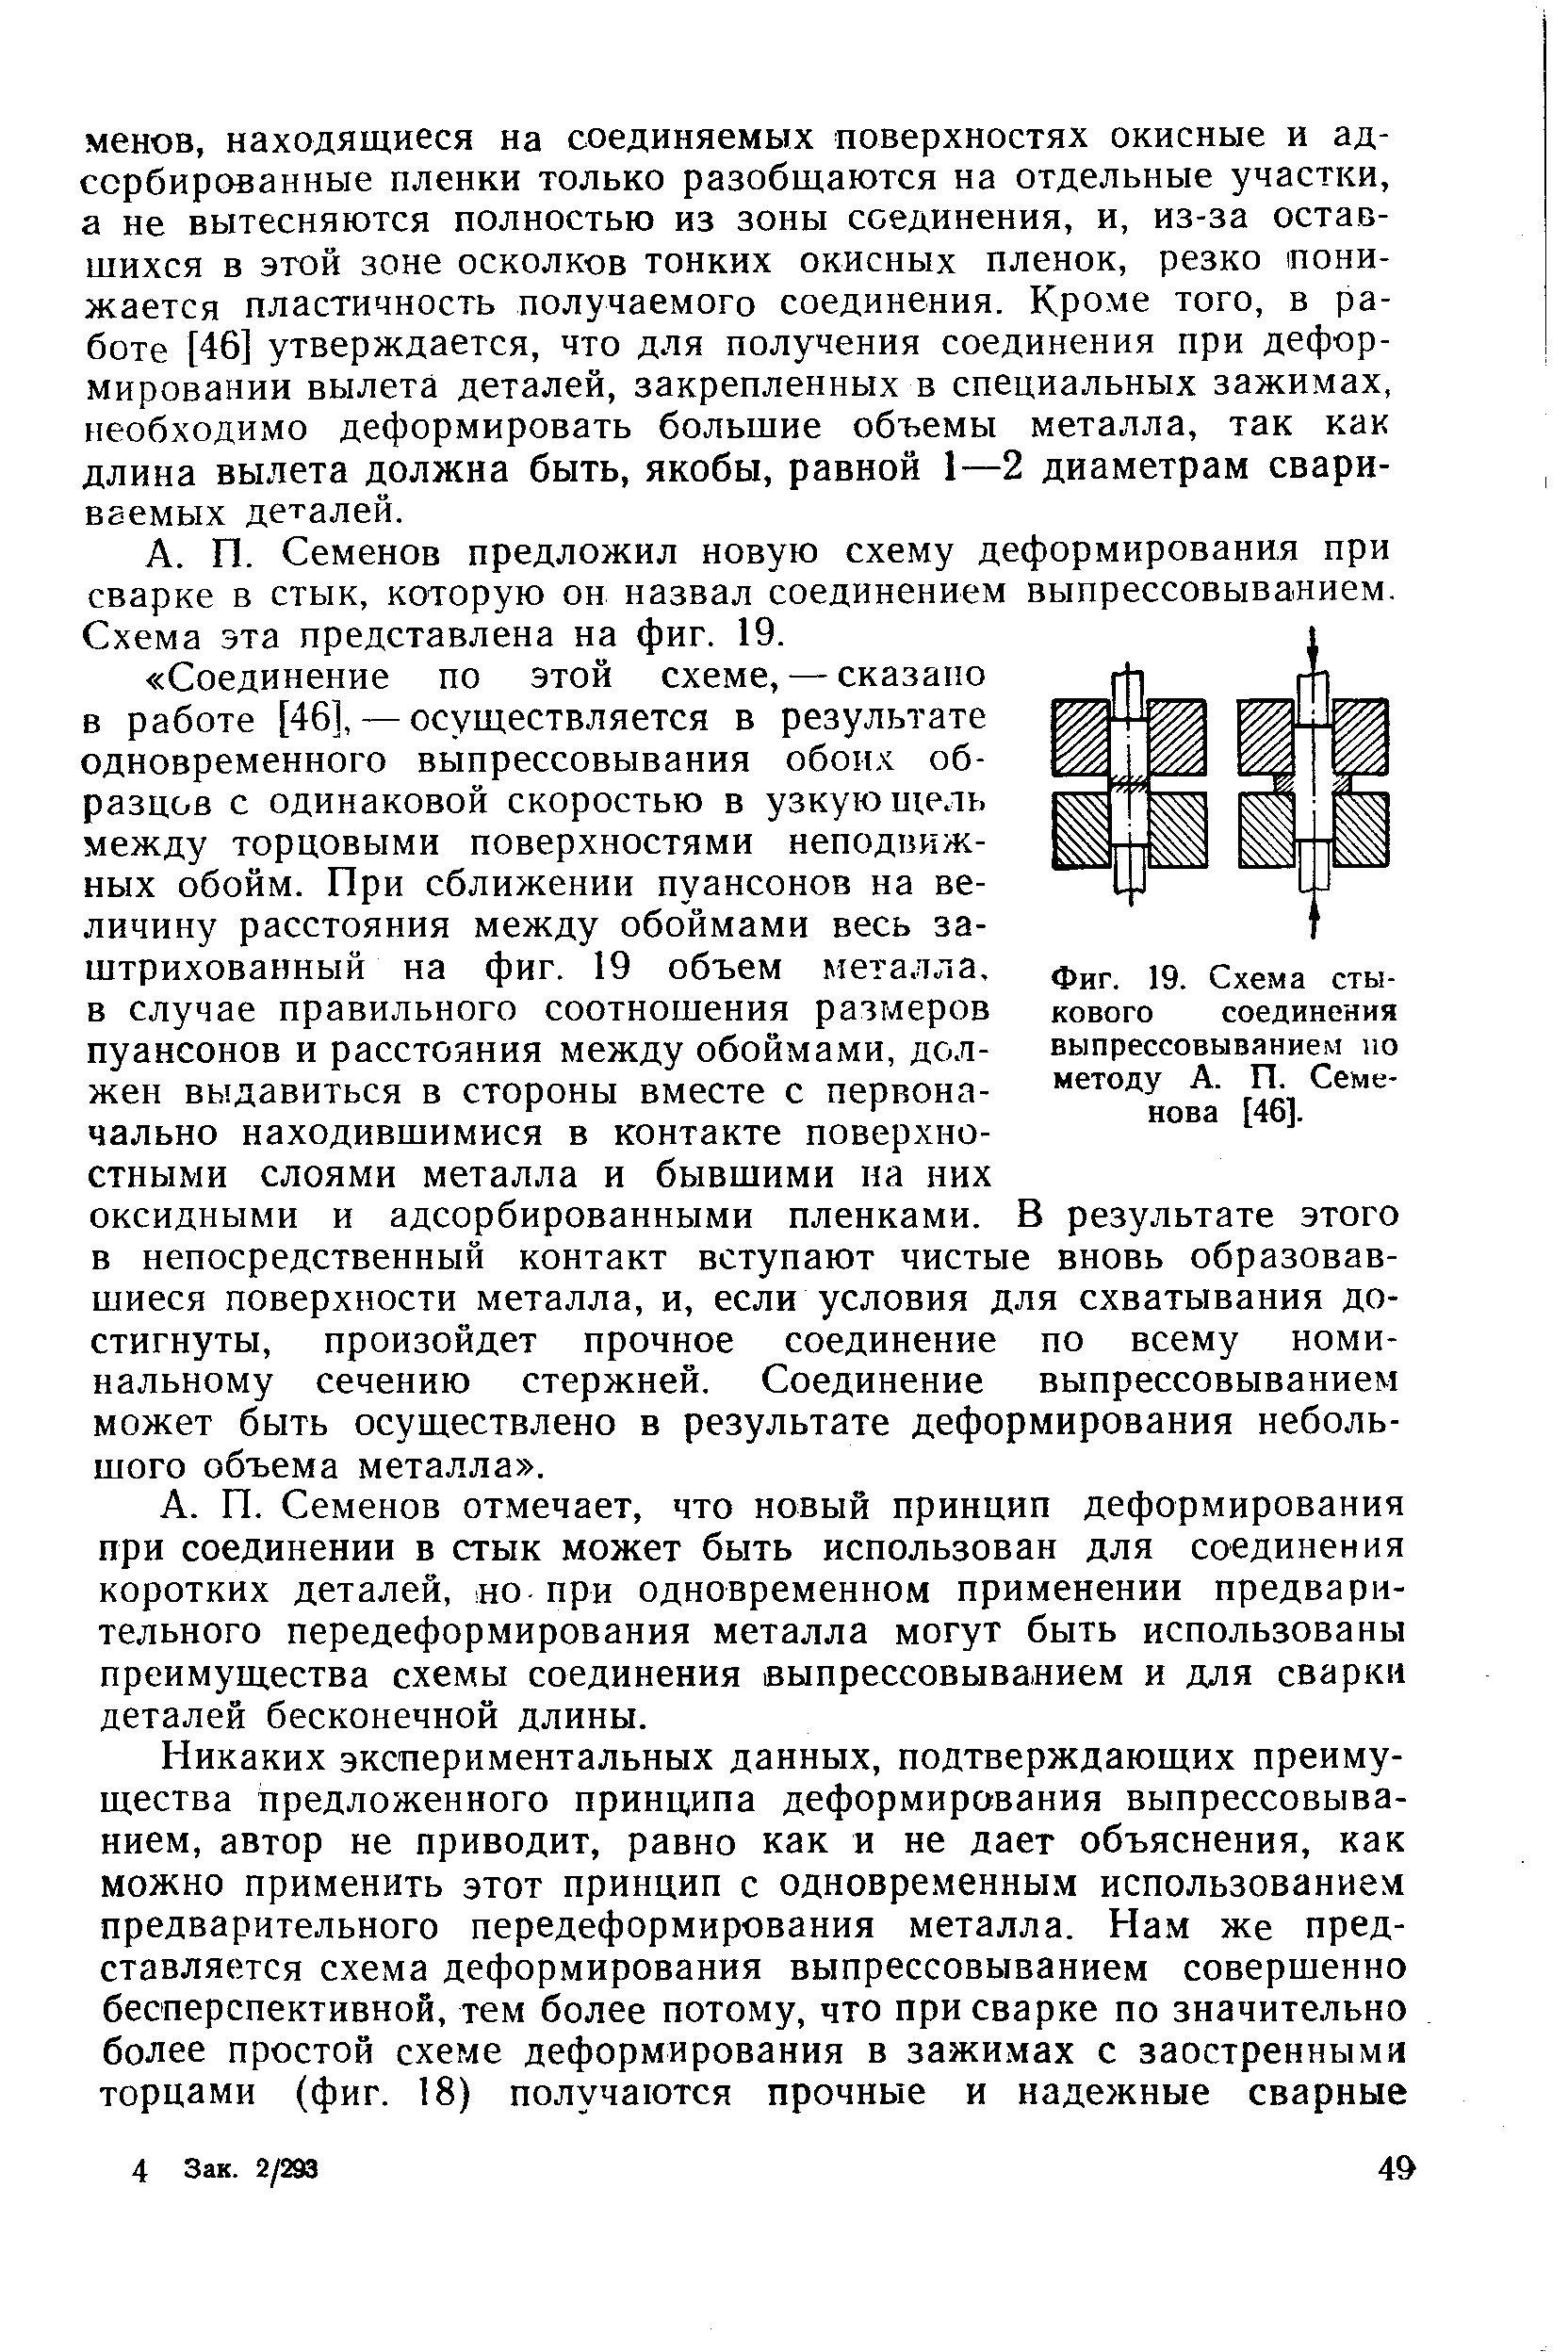 Фиг. 19. Схема стыкового соединения выпрессовыванием по методу А. П. Семенова [46].
